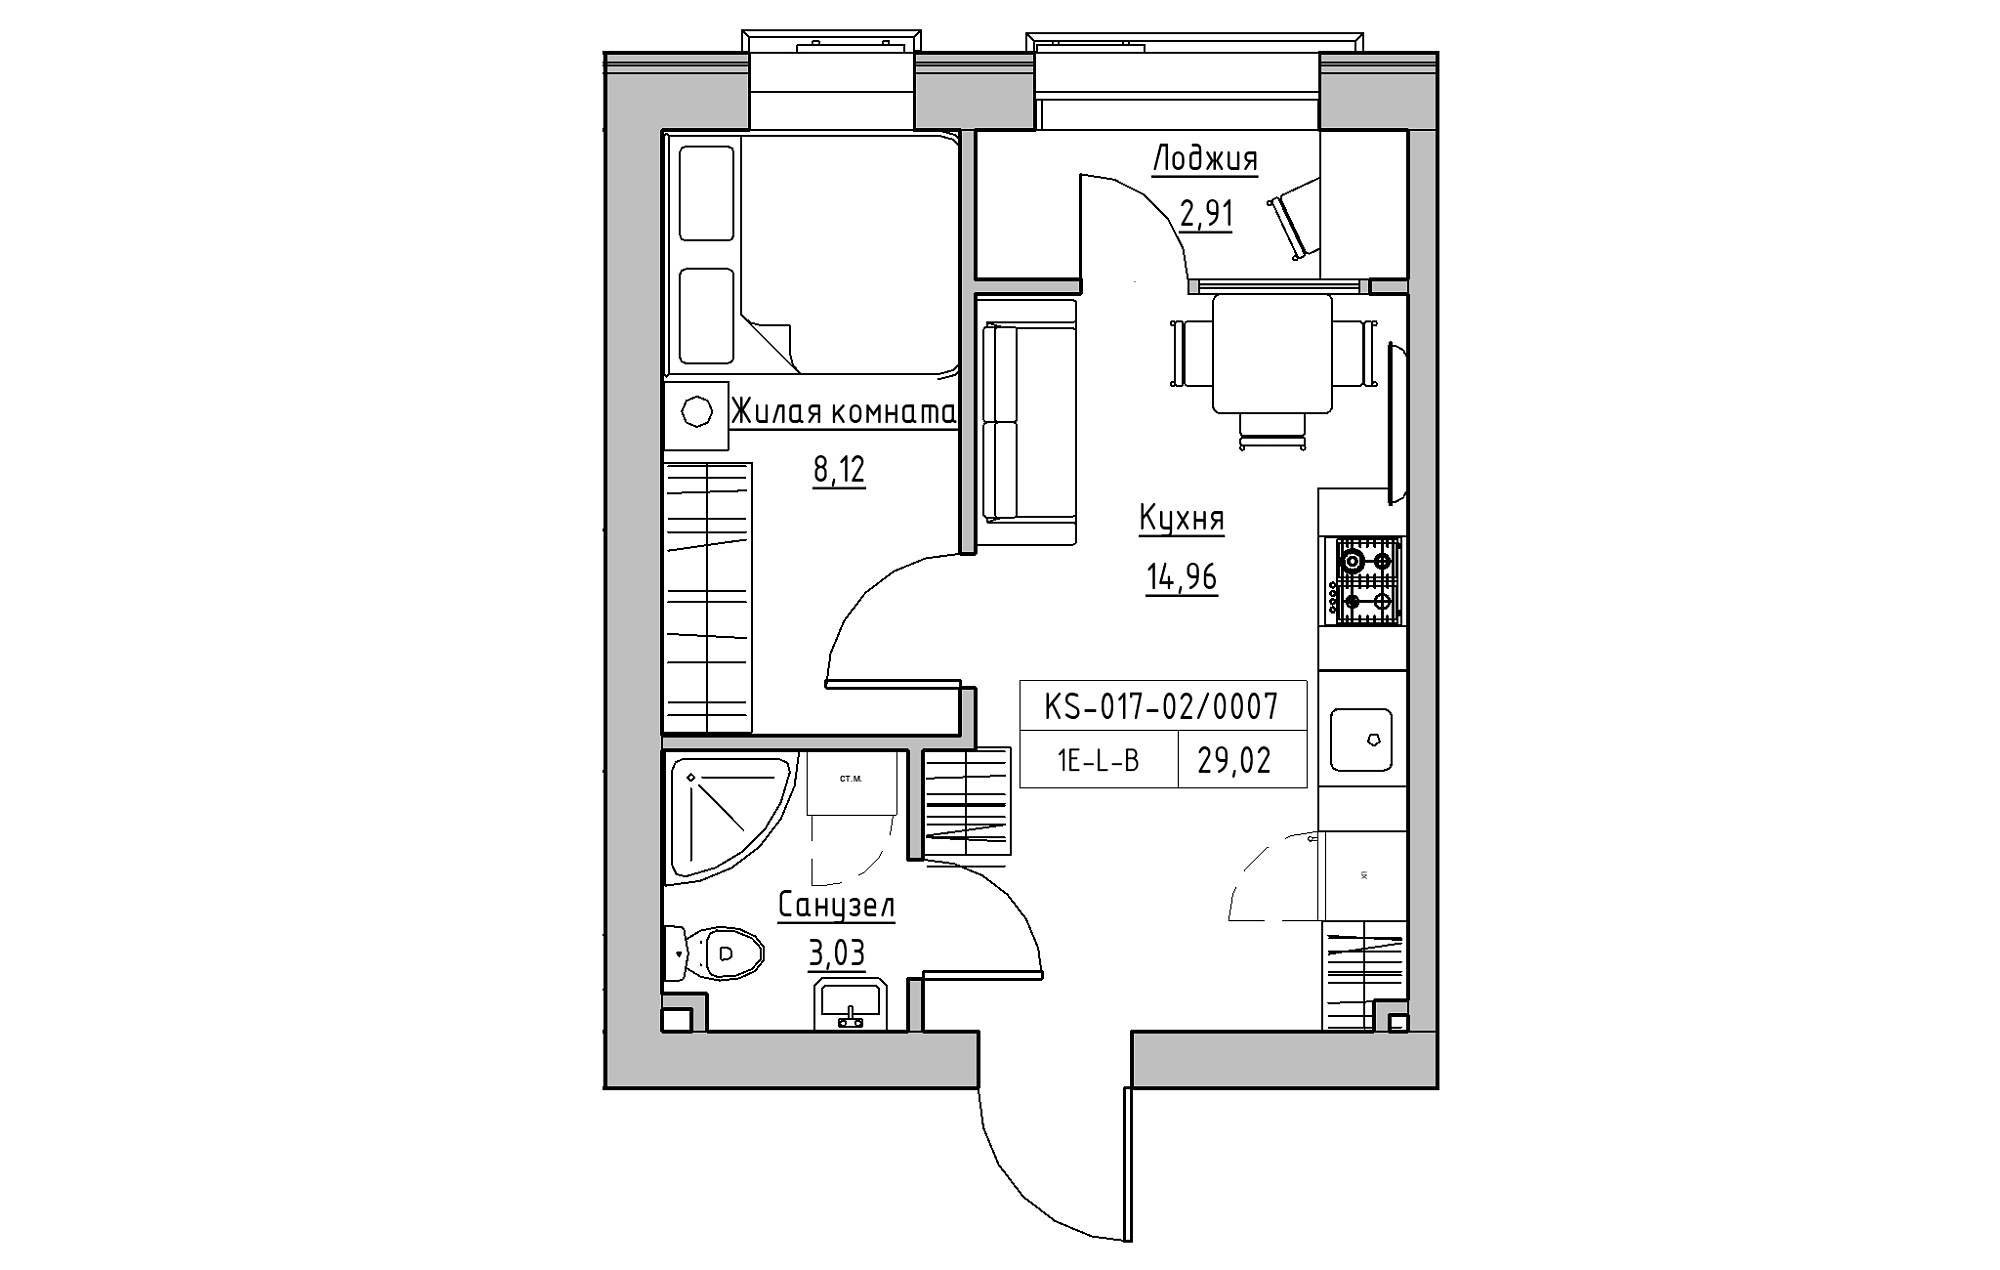 Планування 1-к квартира площею 29.02м2, KS-017-02/0007.